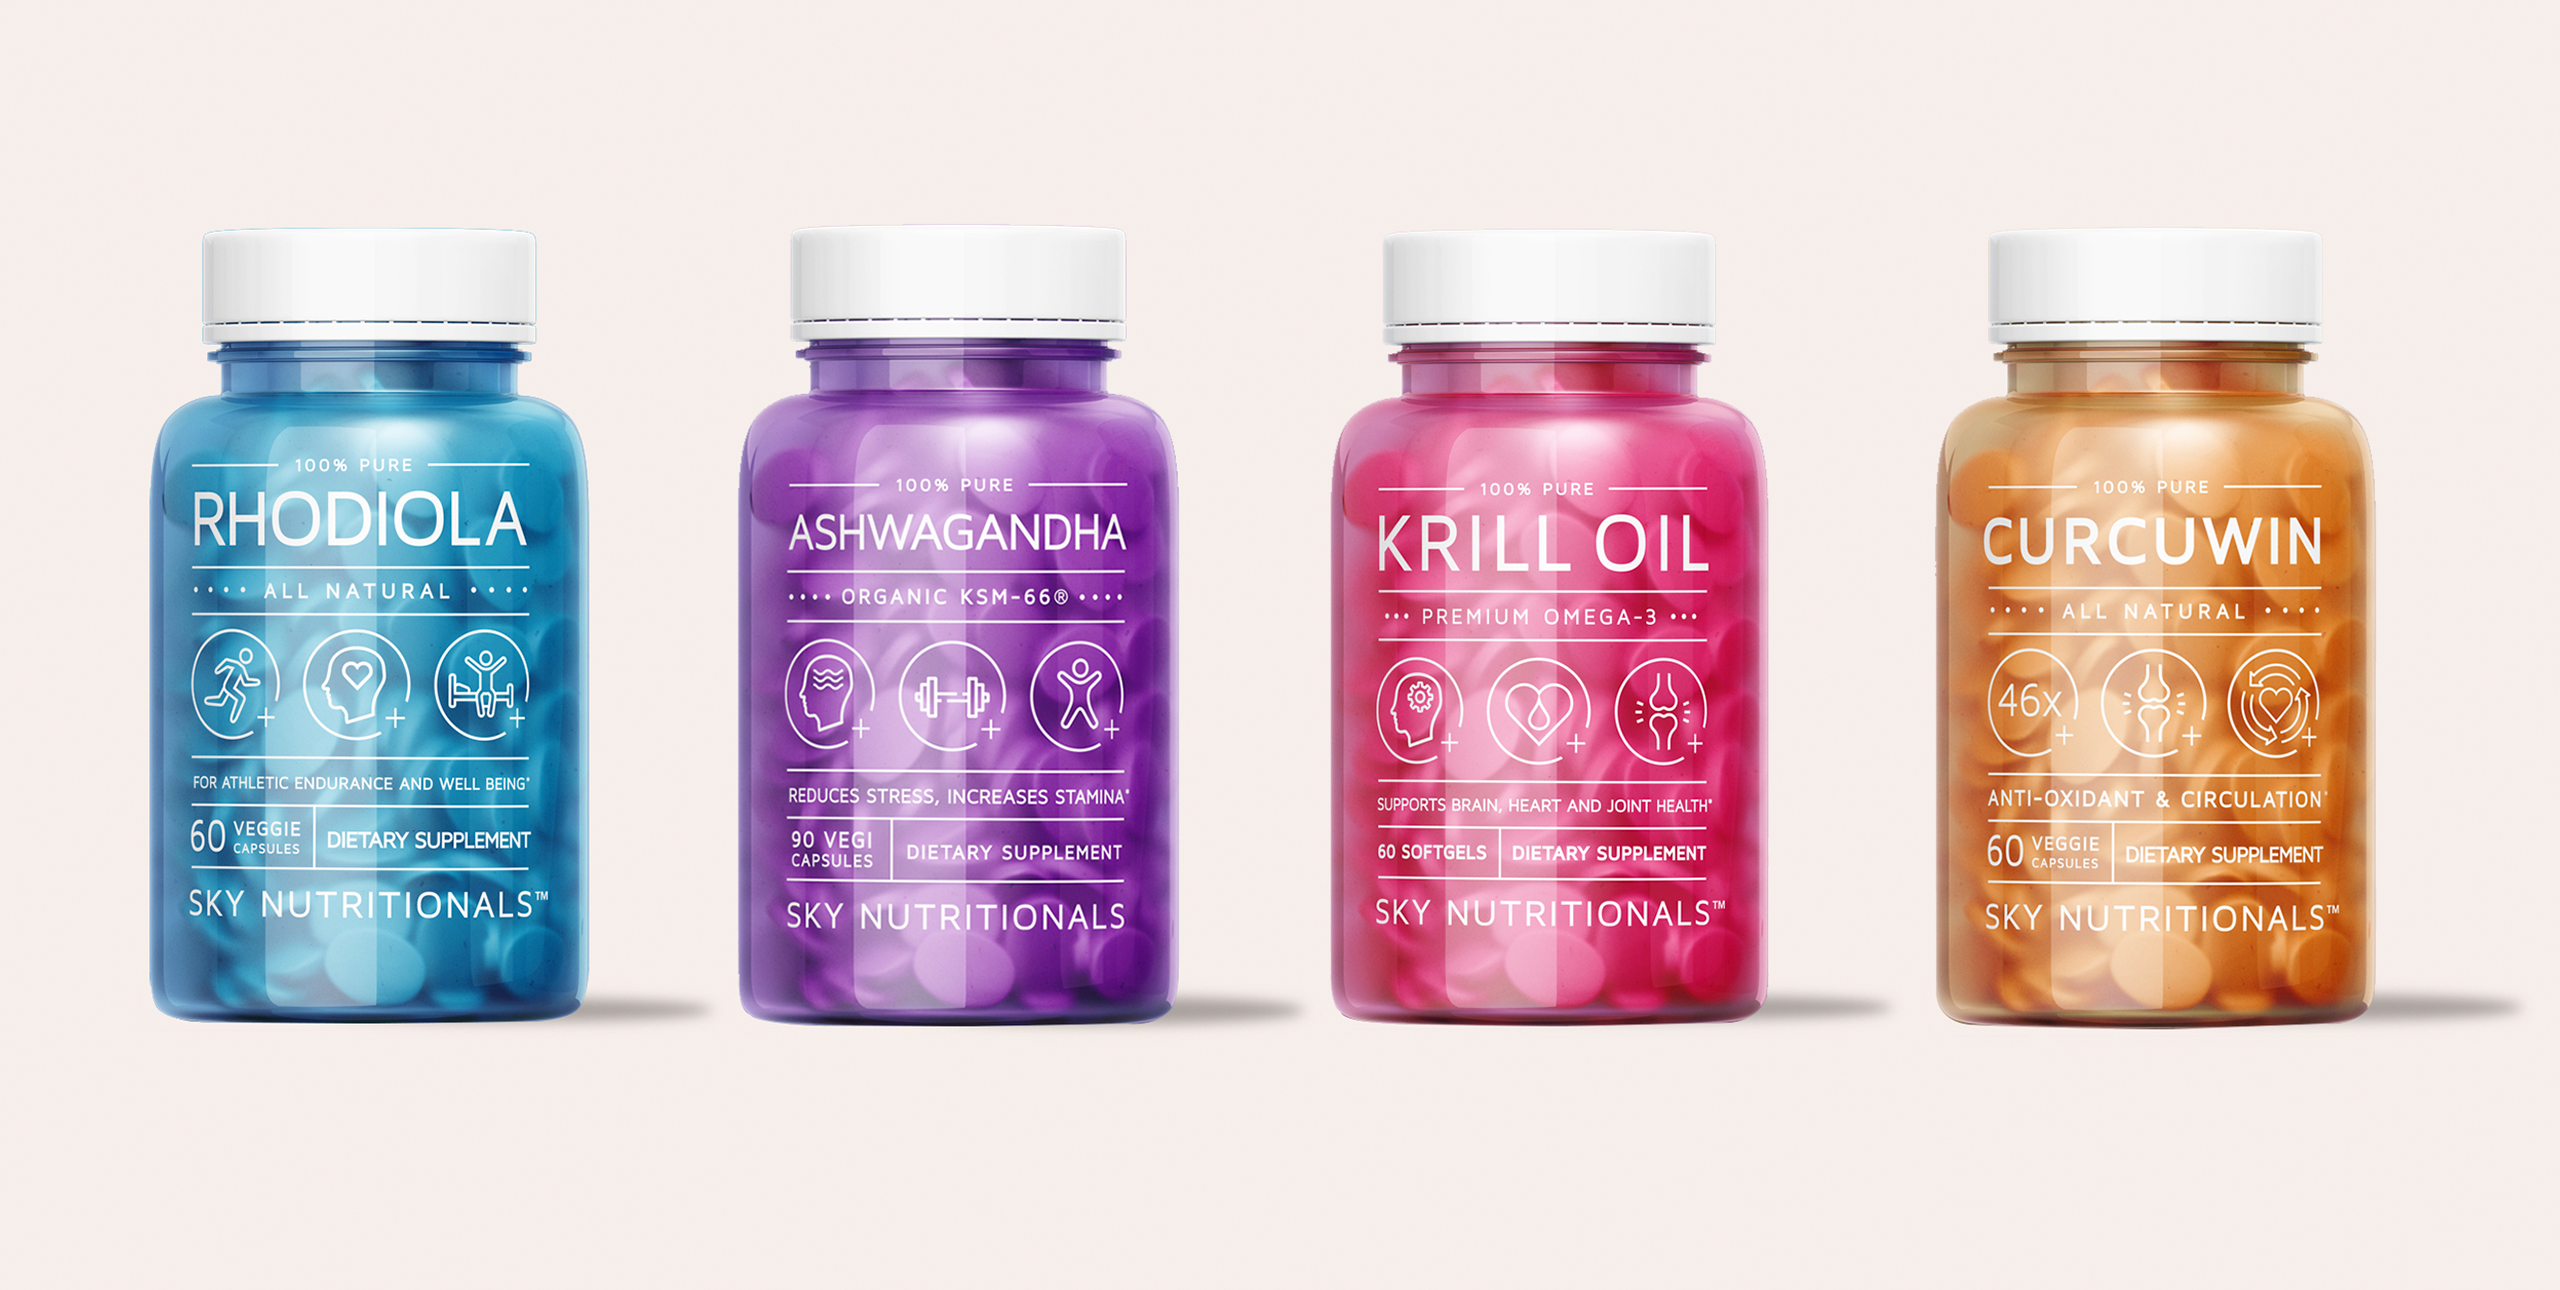 Sky Nutritionals bottle packaging design 